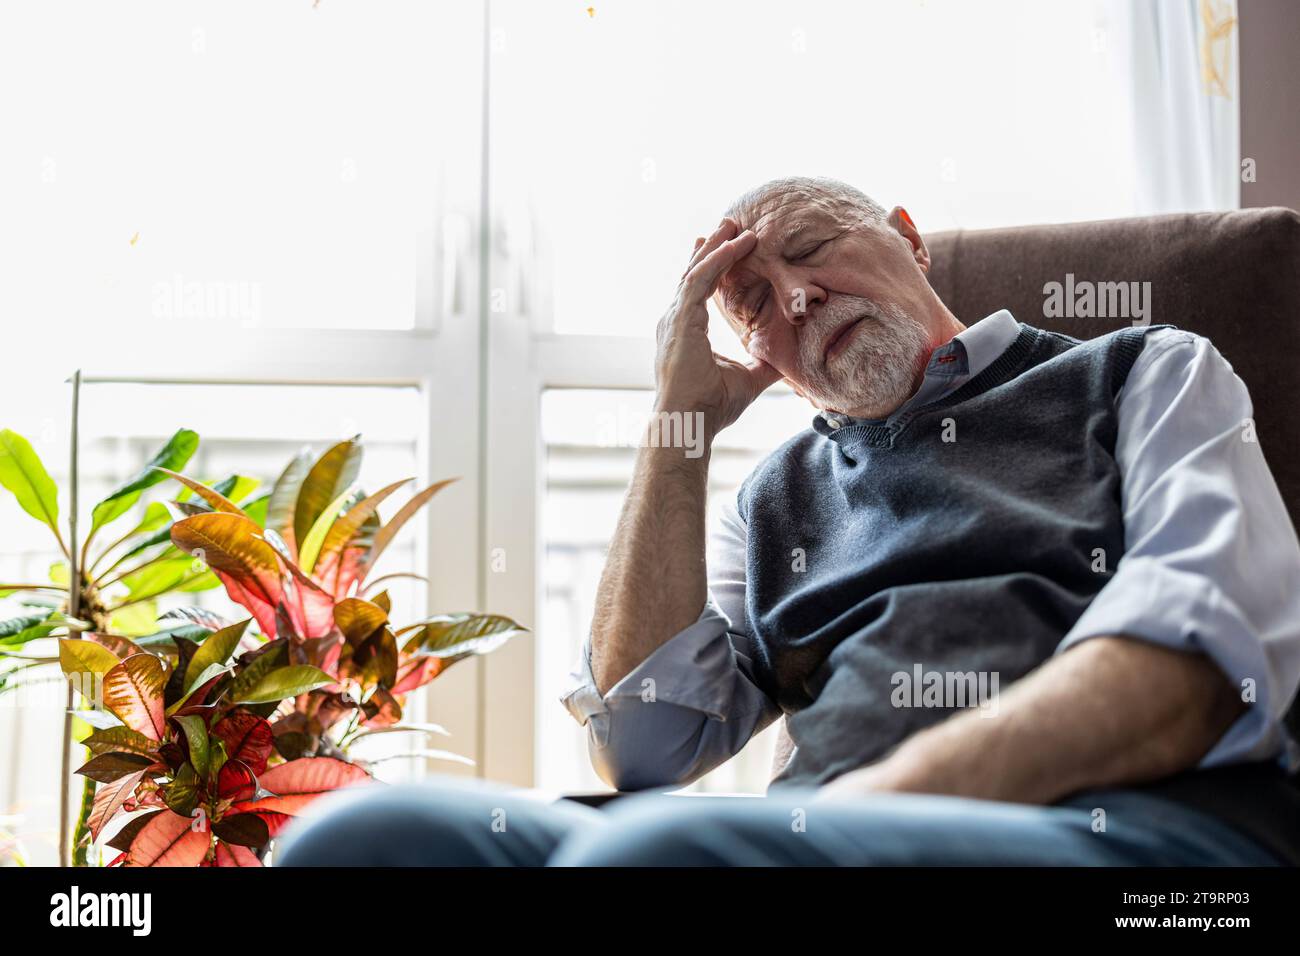 Homme senior dormant dans un fauteuil à la maison Banque D'Images